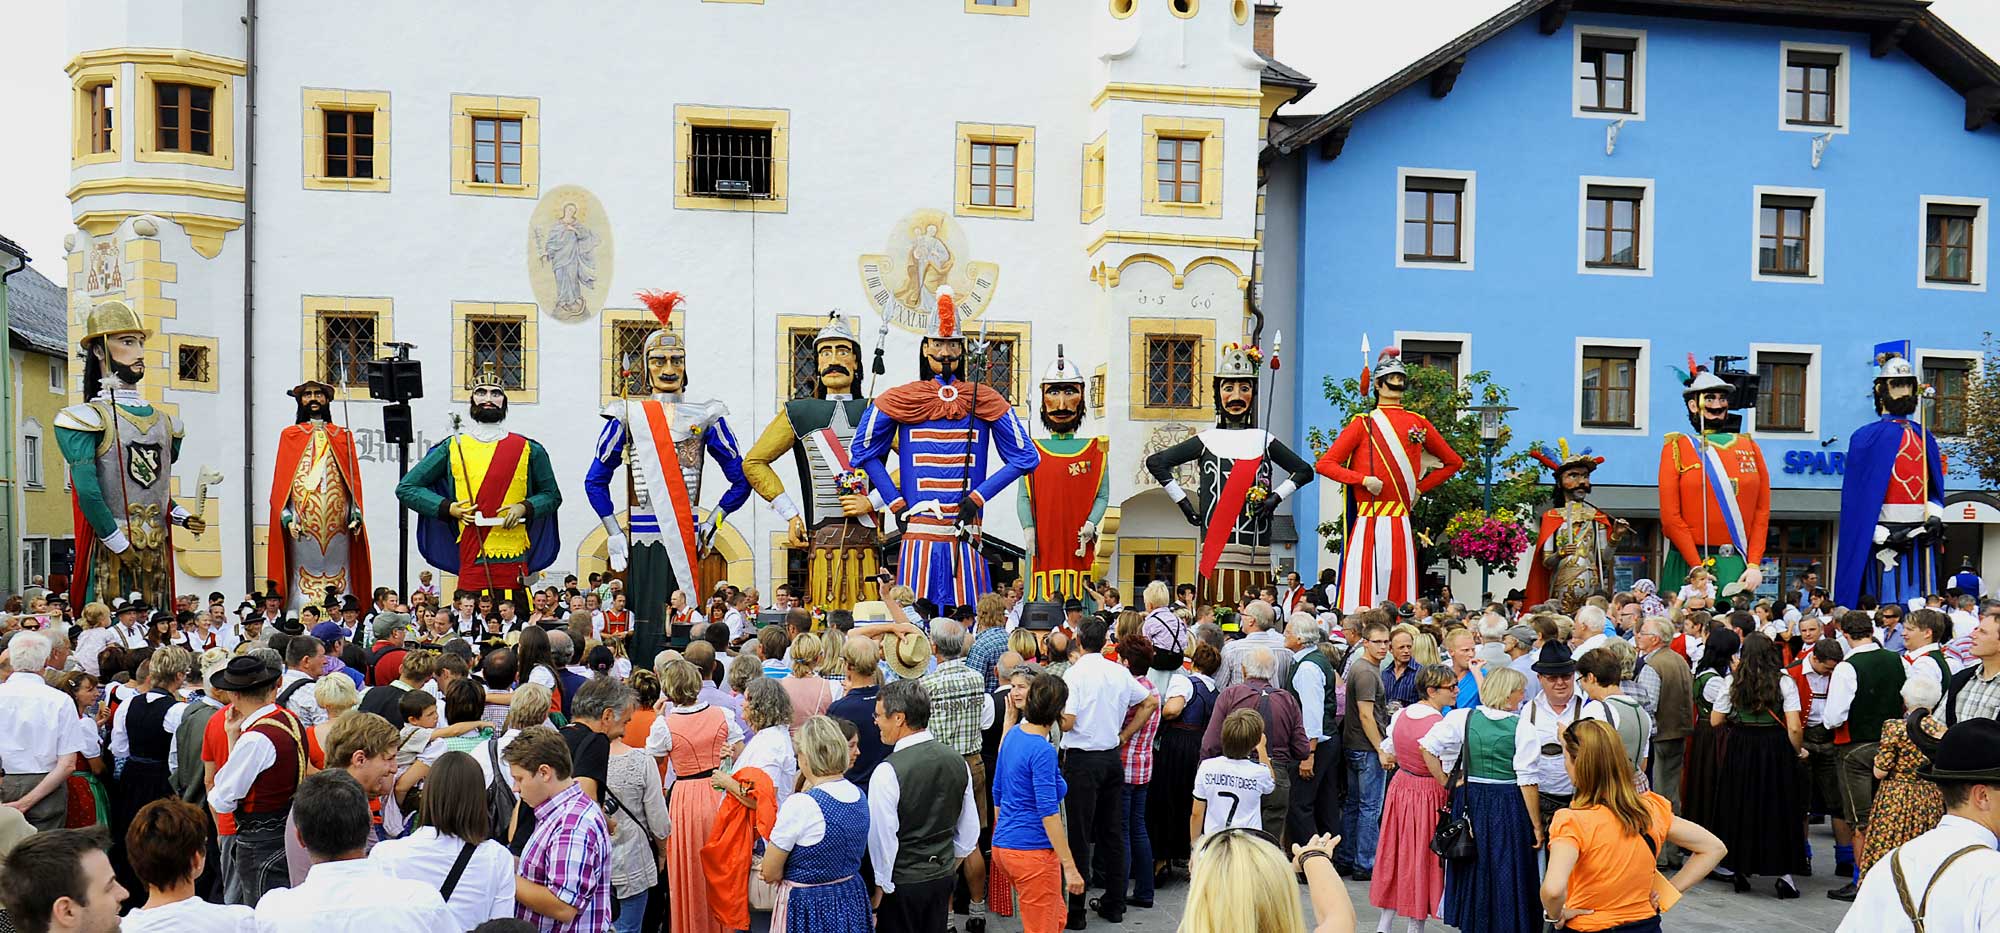 5 spectacular traditional festivals in Austria | Travel to Austria